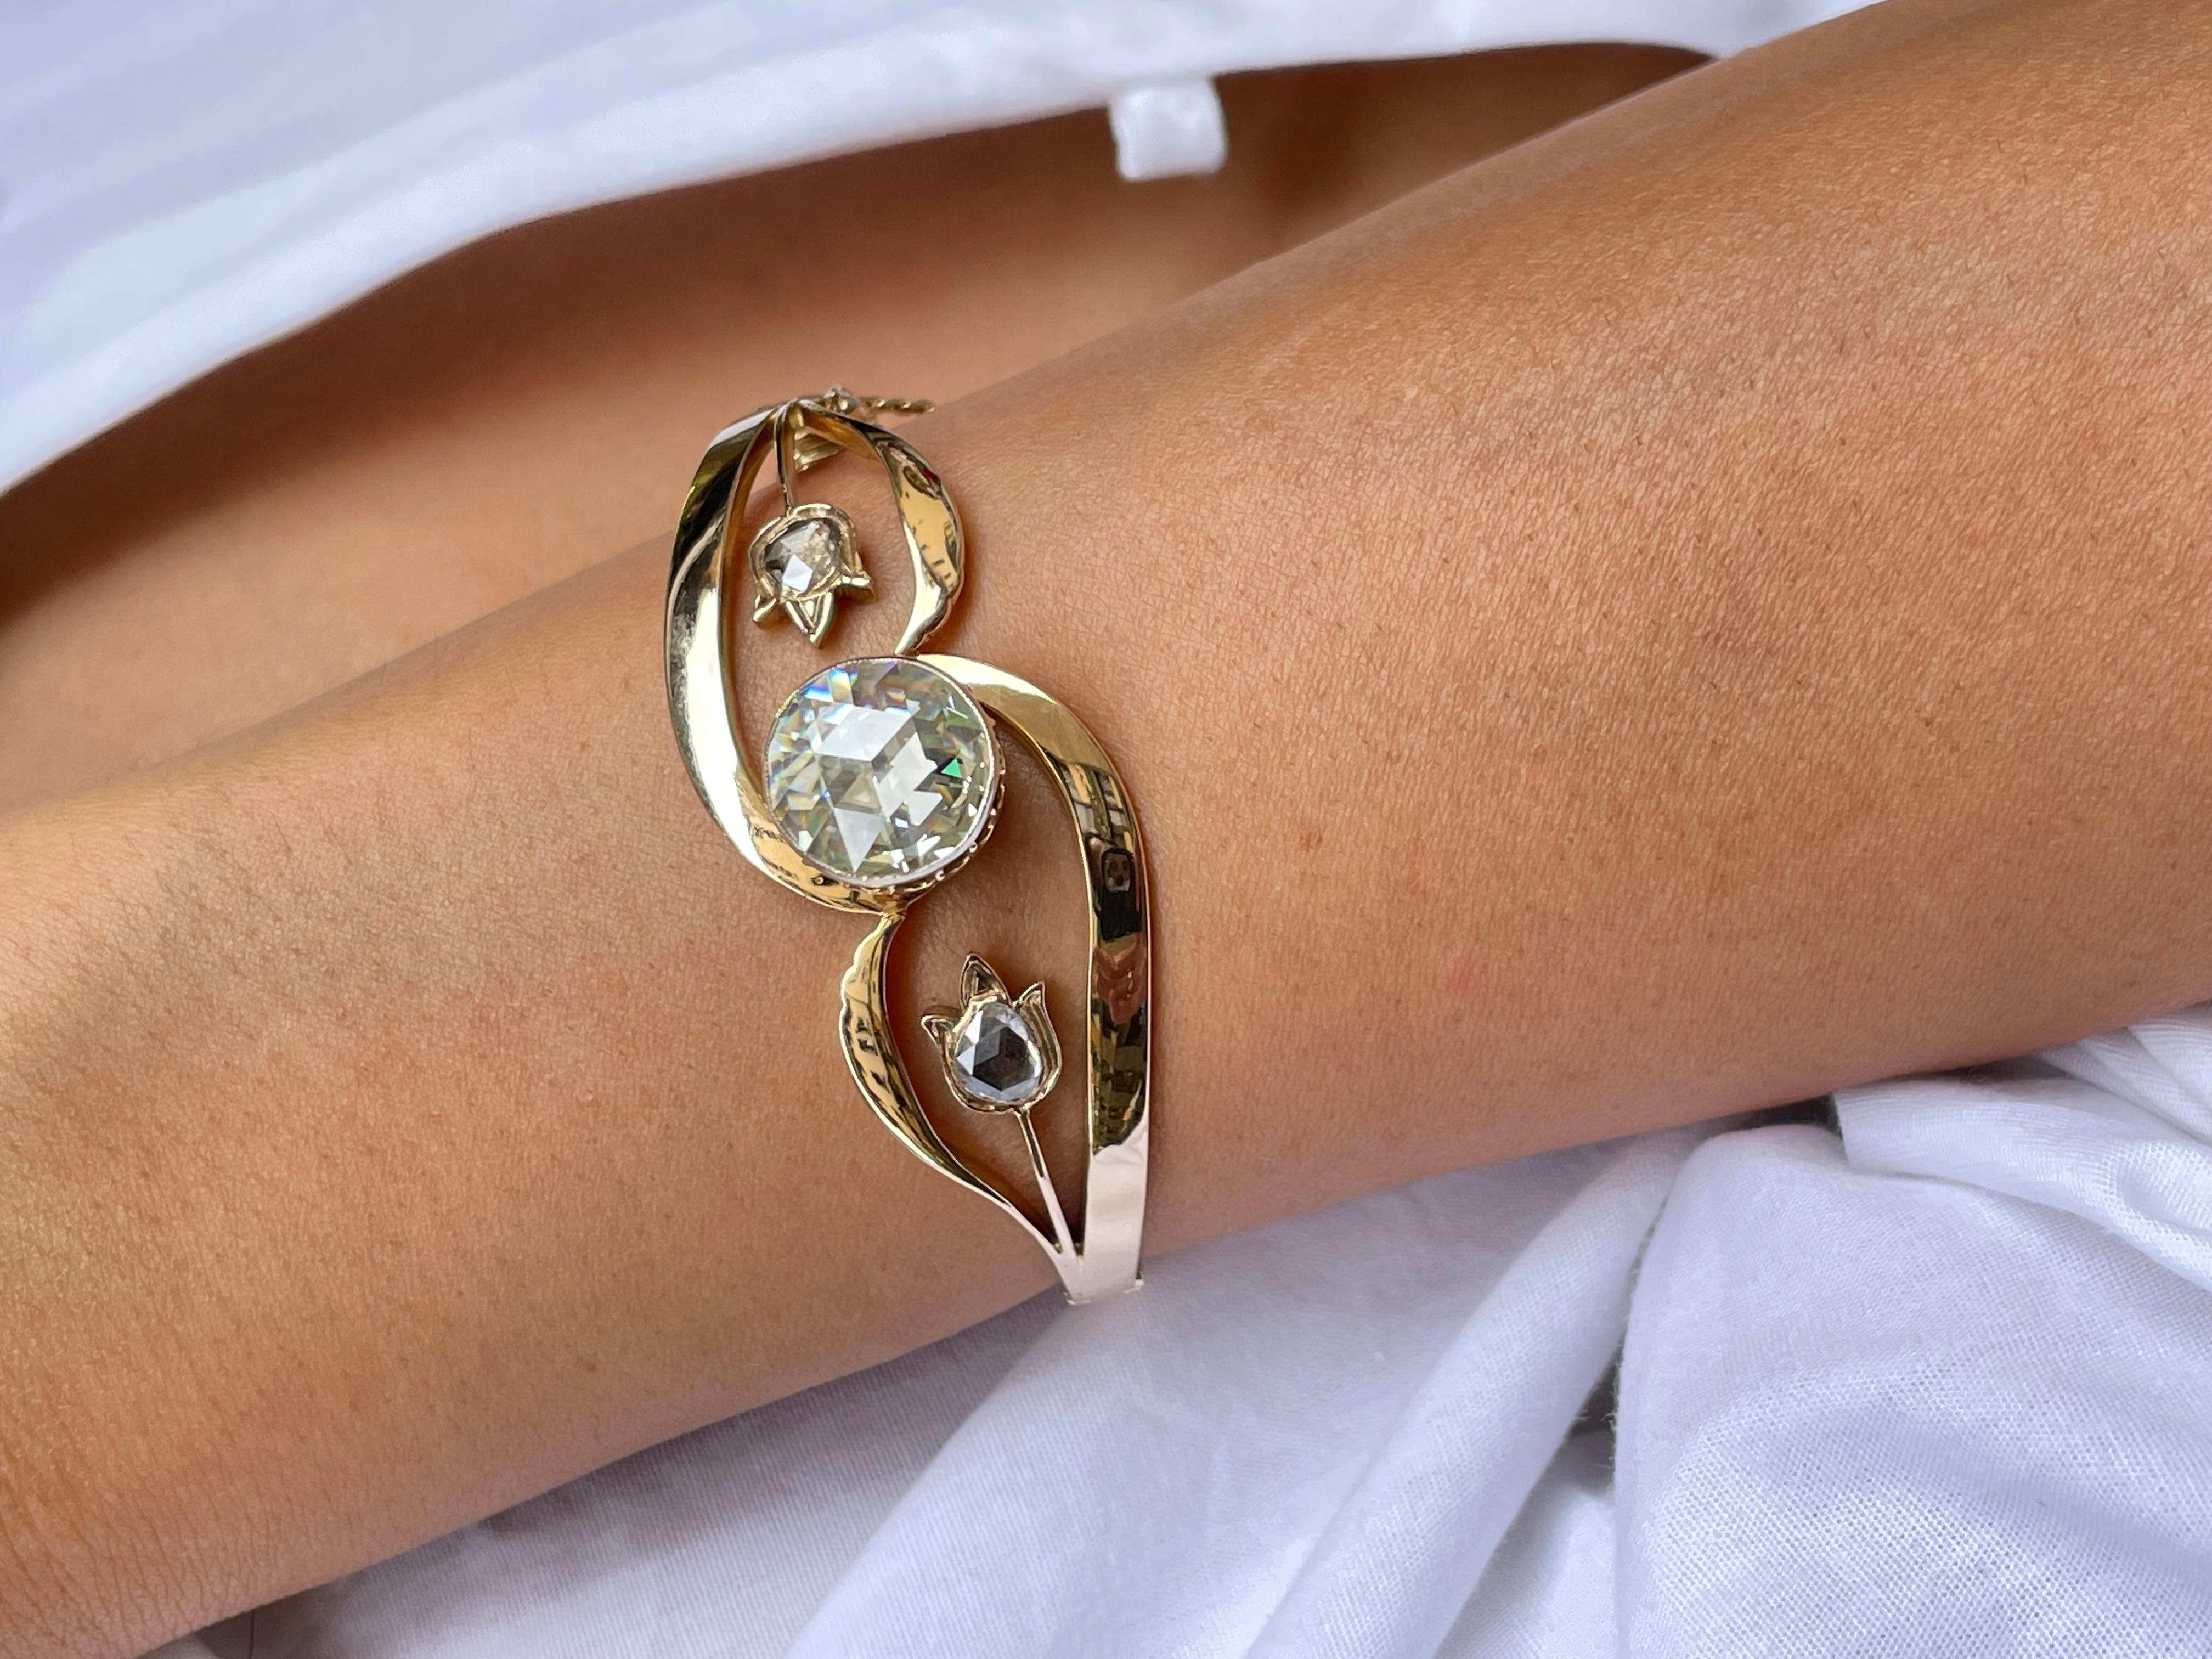 Le bracelet contient un diamant rond convexe rare de taille rose, approximativement 4.50 carats, couleur G, clarté VS.